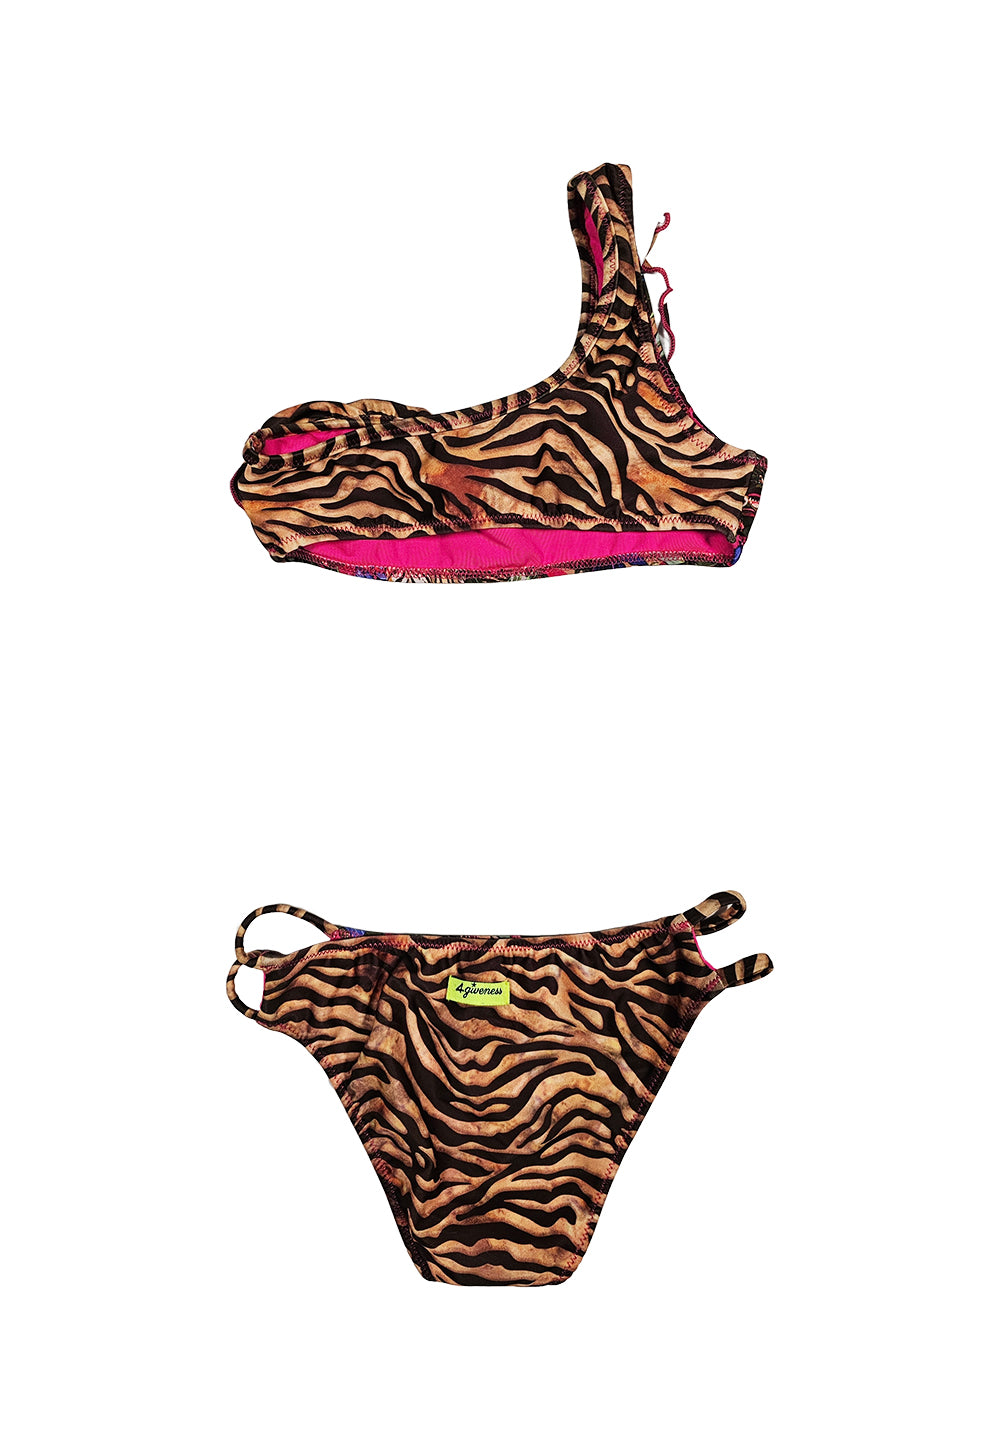 Multicolor bikini costume for girls